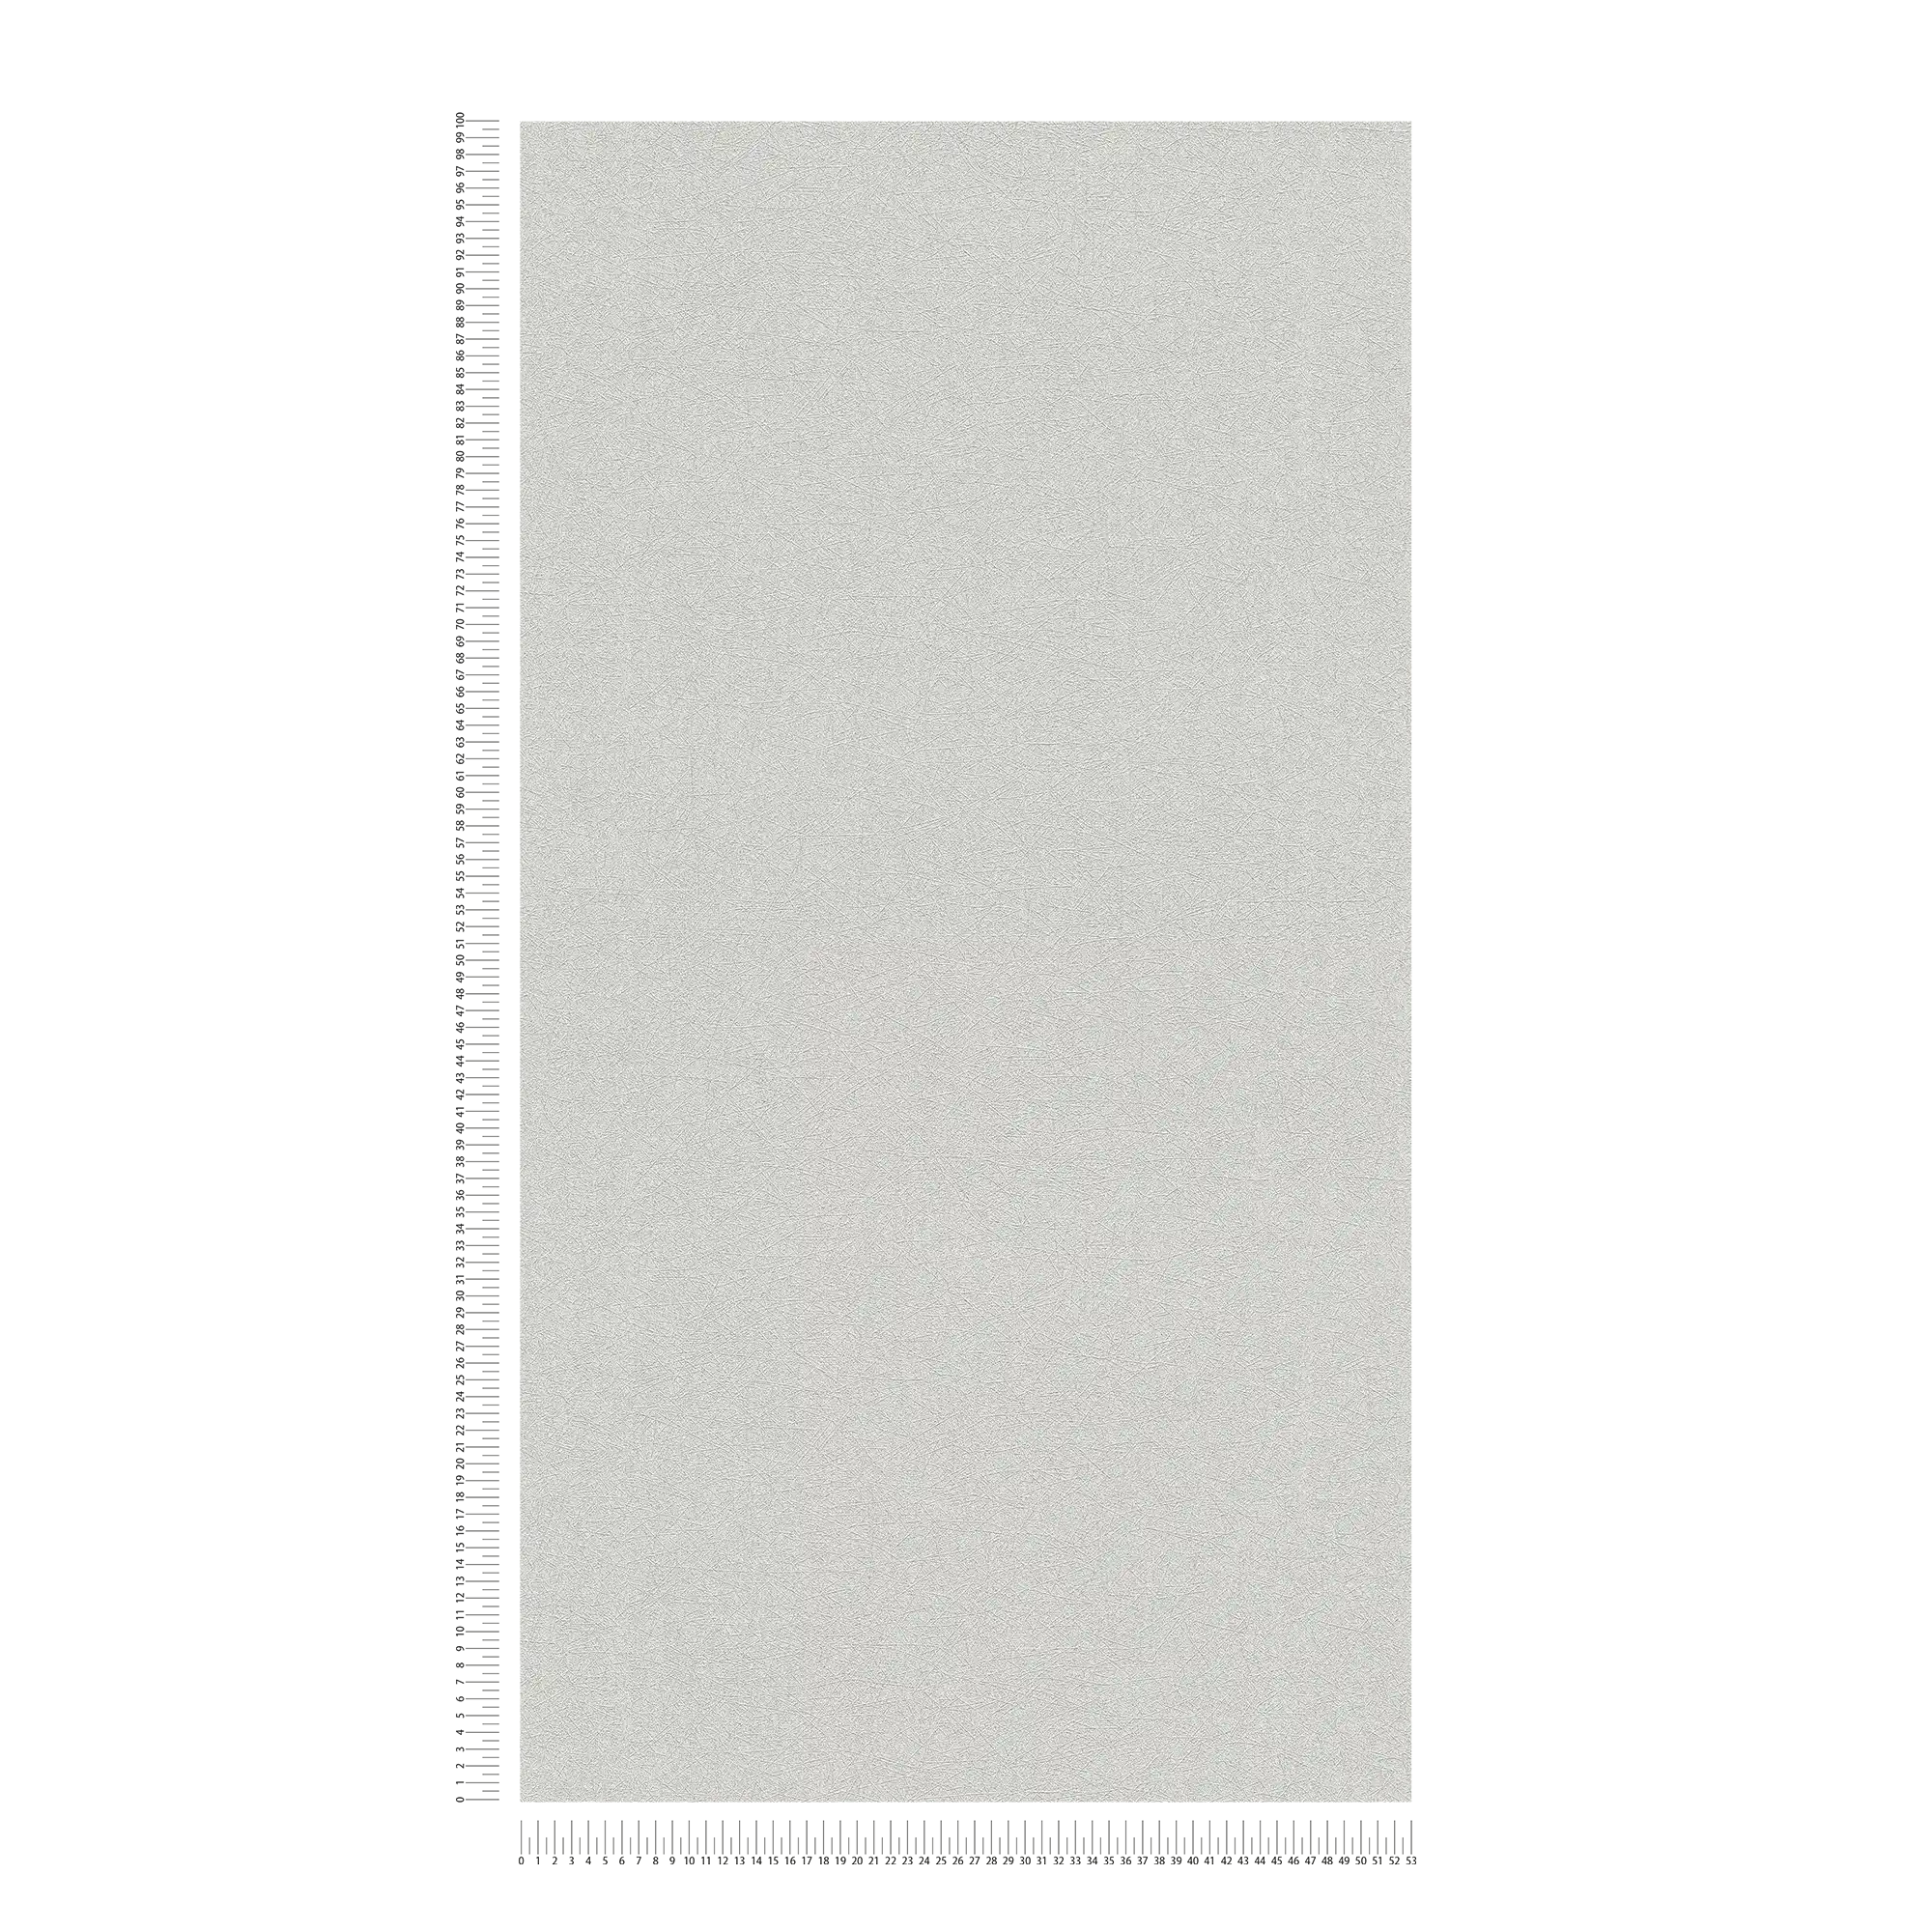             papier peint en papier intissé uni avec fibres motif structuré - gris, argenté
        